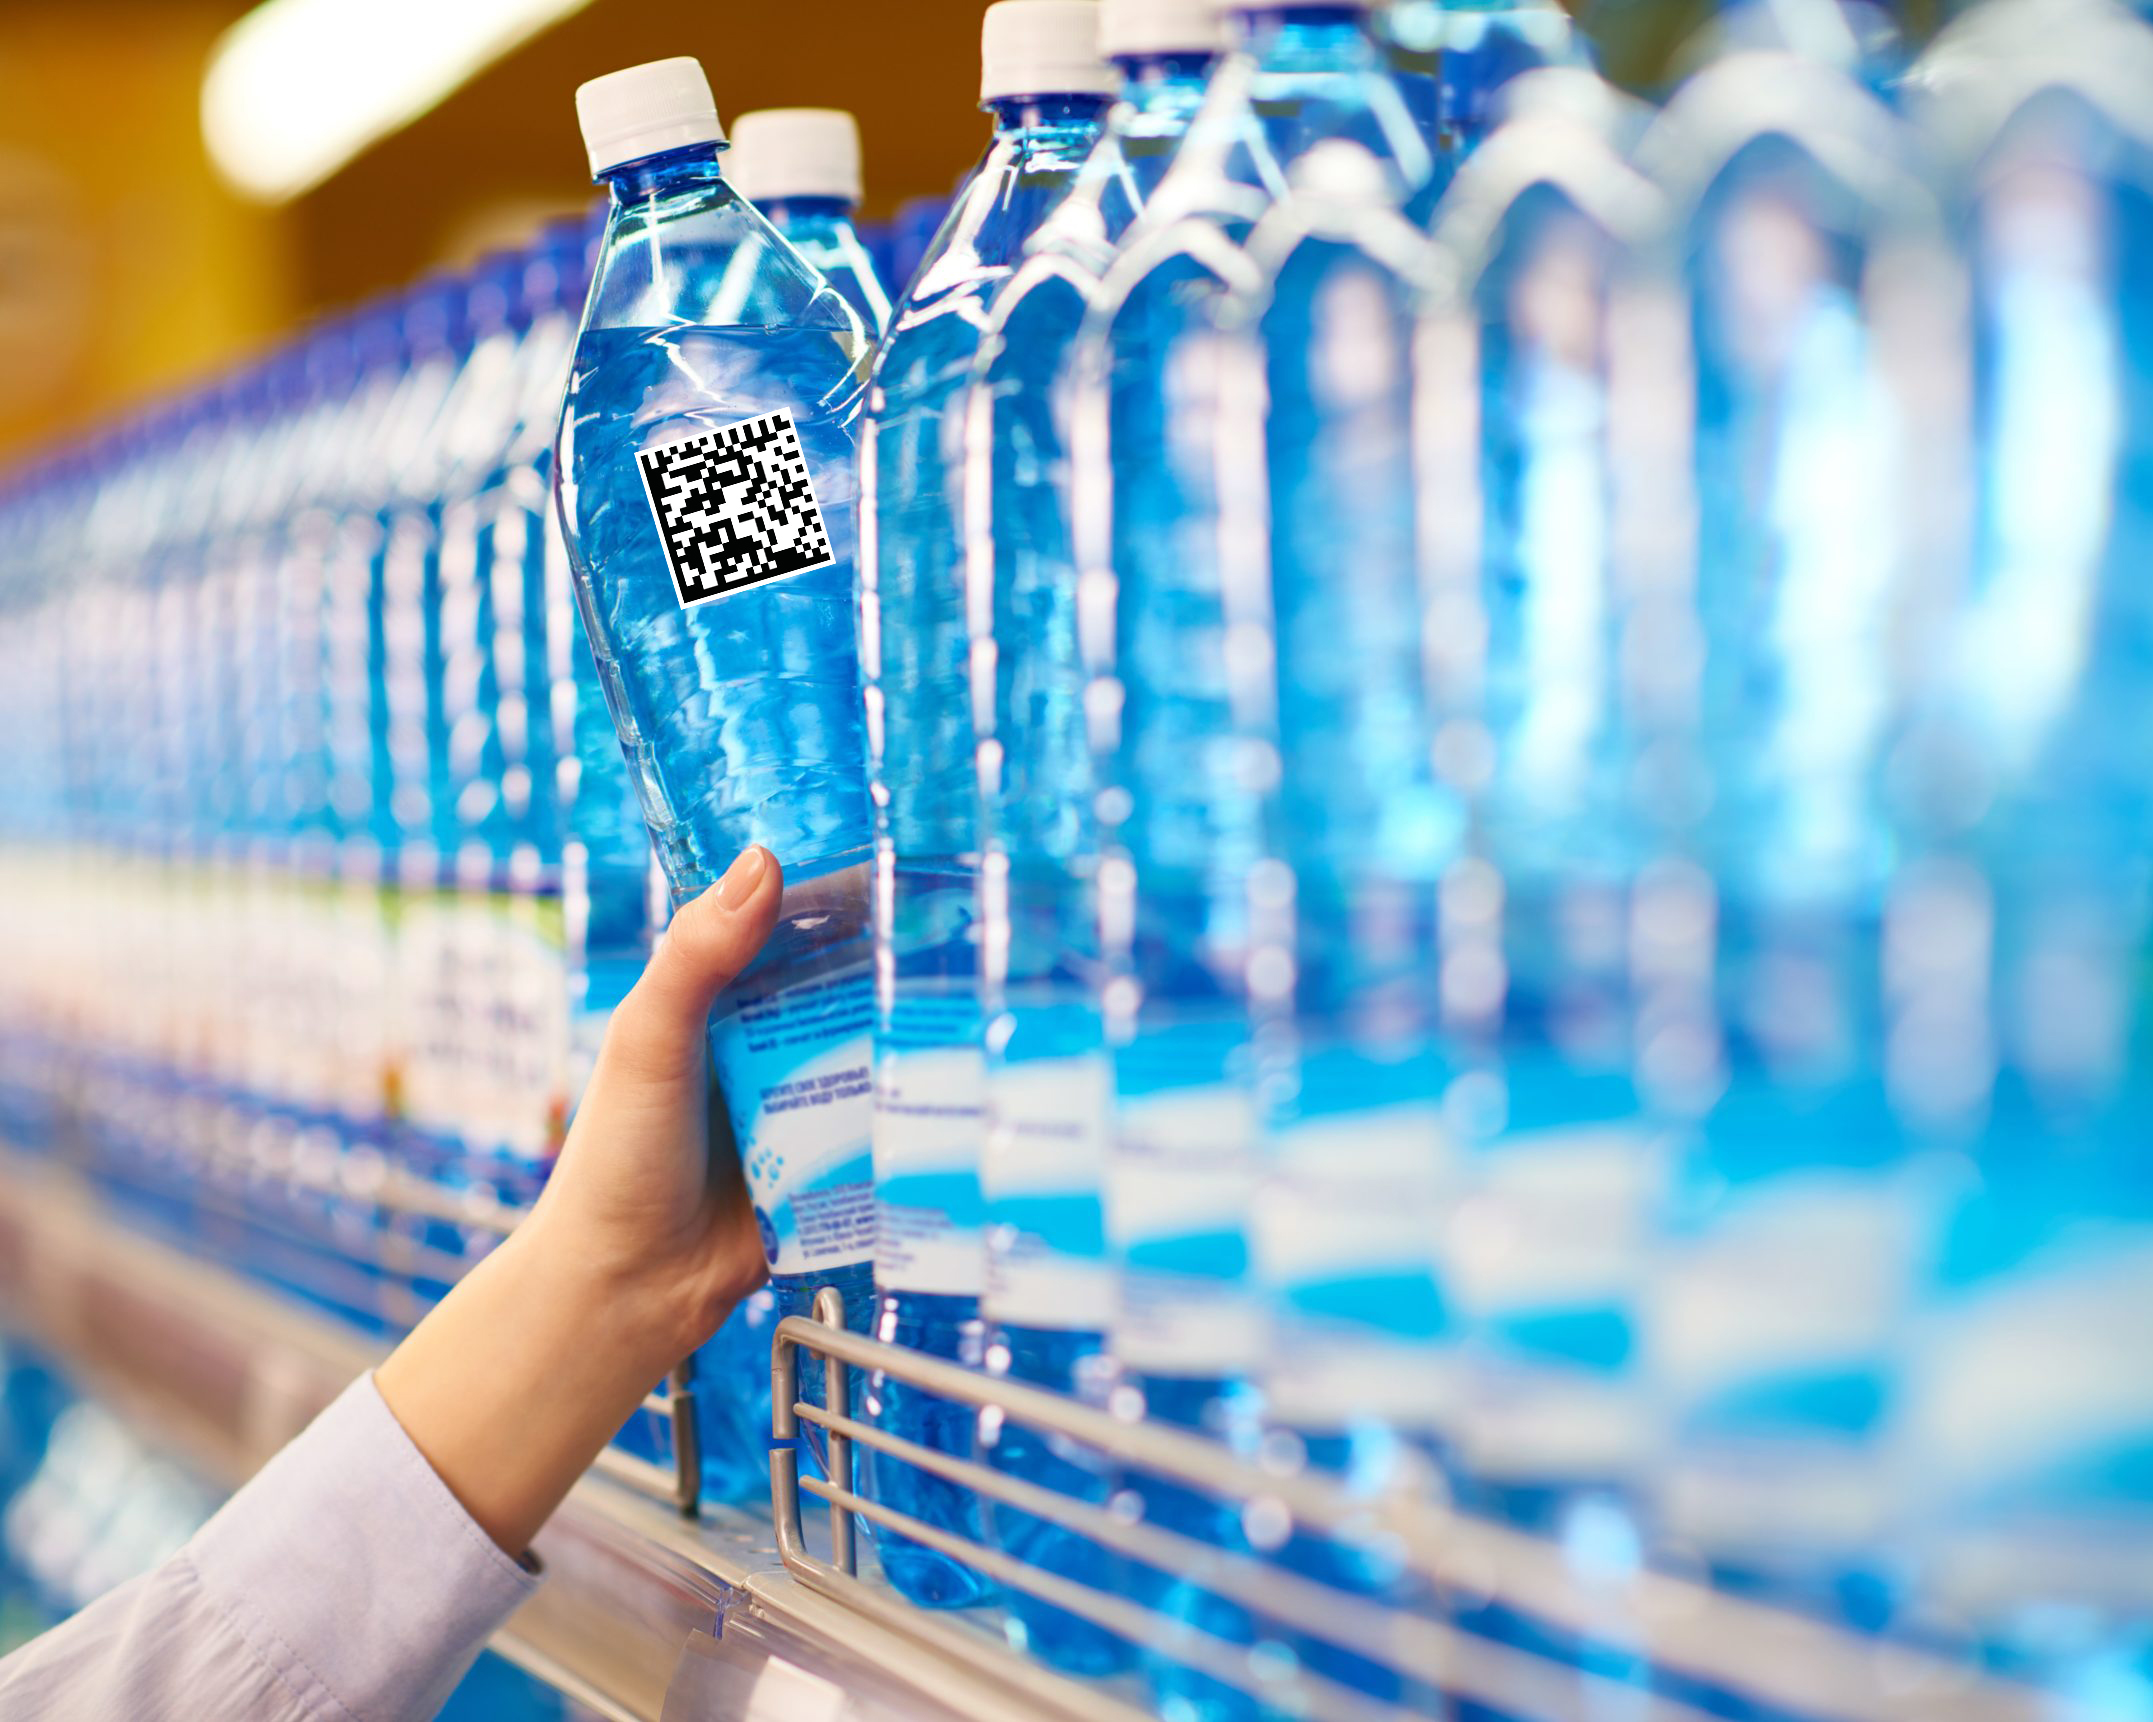 Питьевая страна. Вода питьевая бутилированная. Бутилированная минеральная вода. Бутылка для воды. Пластиковые бутылки в магазине.